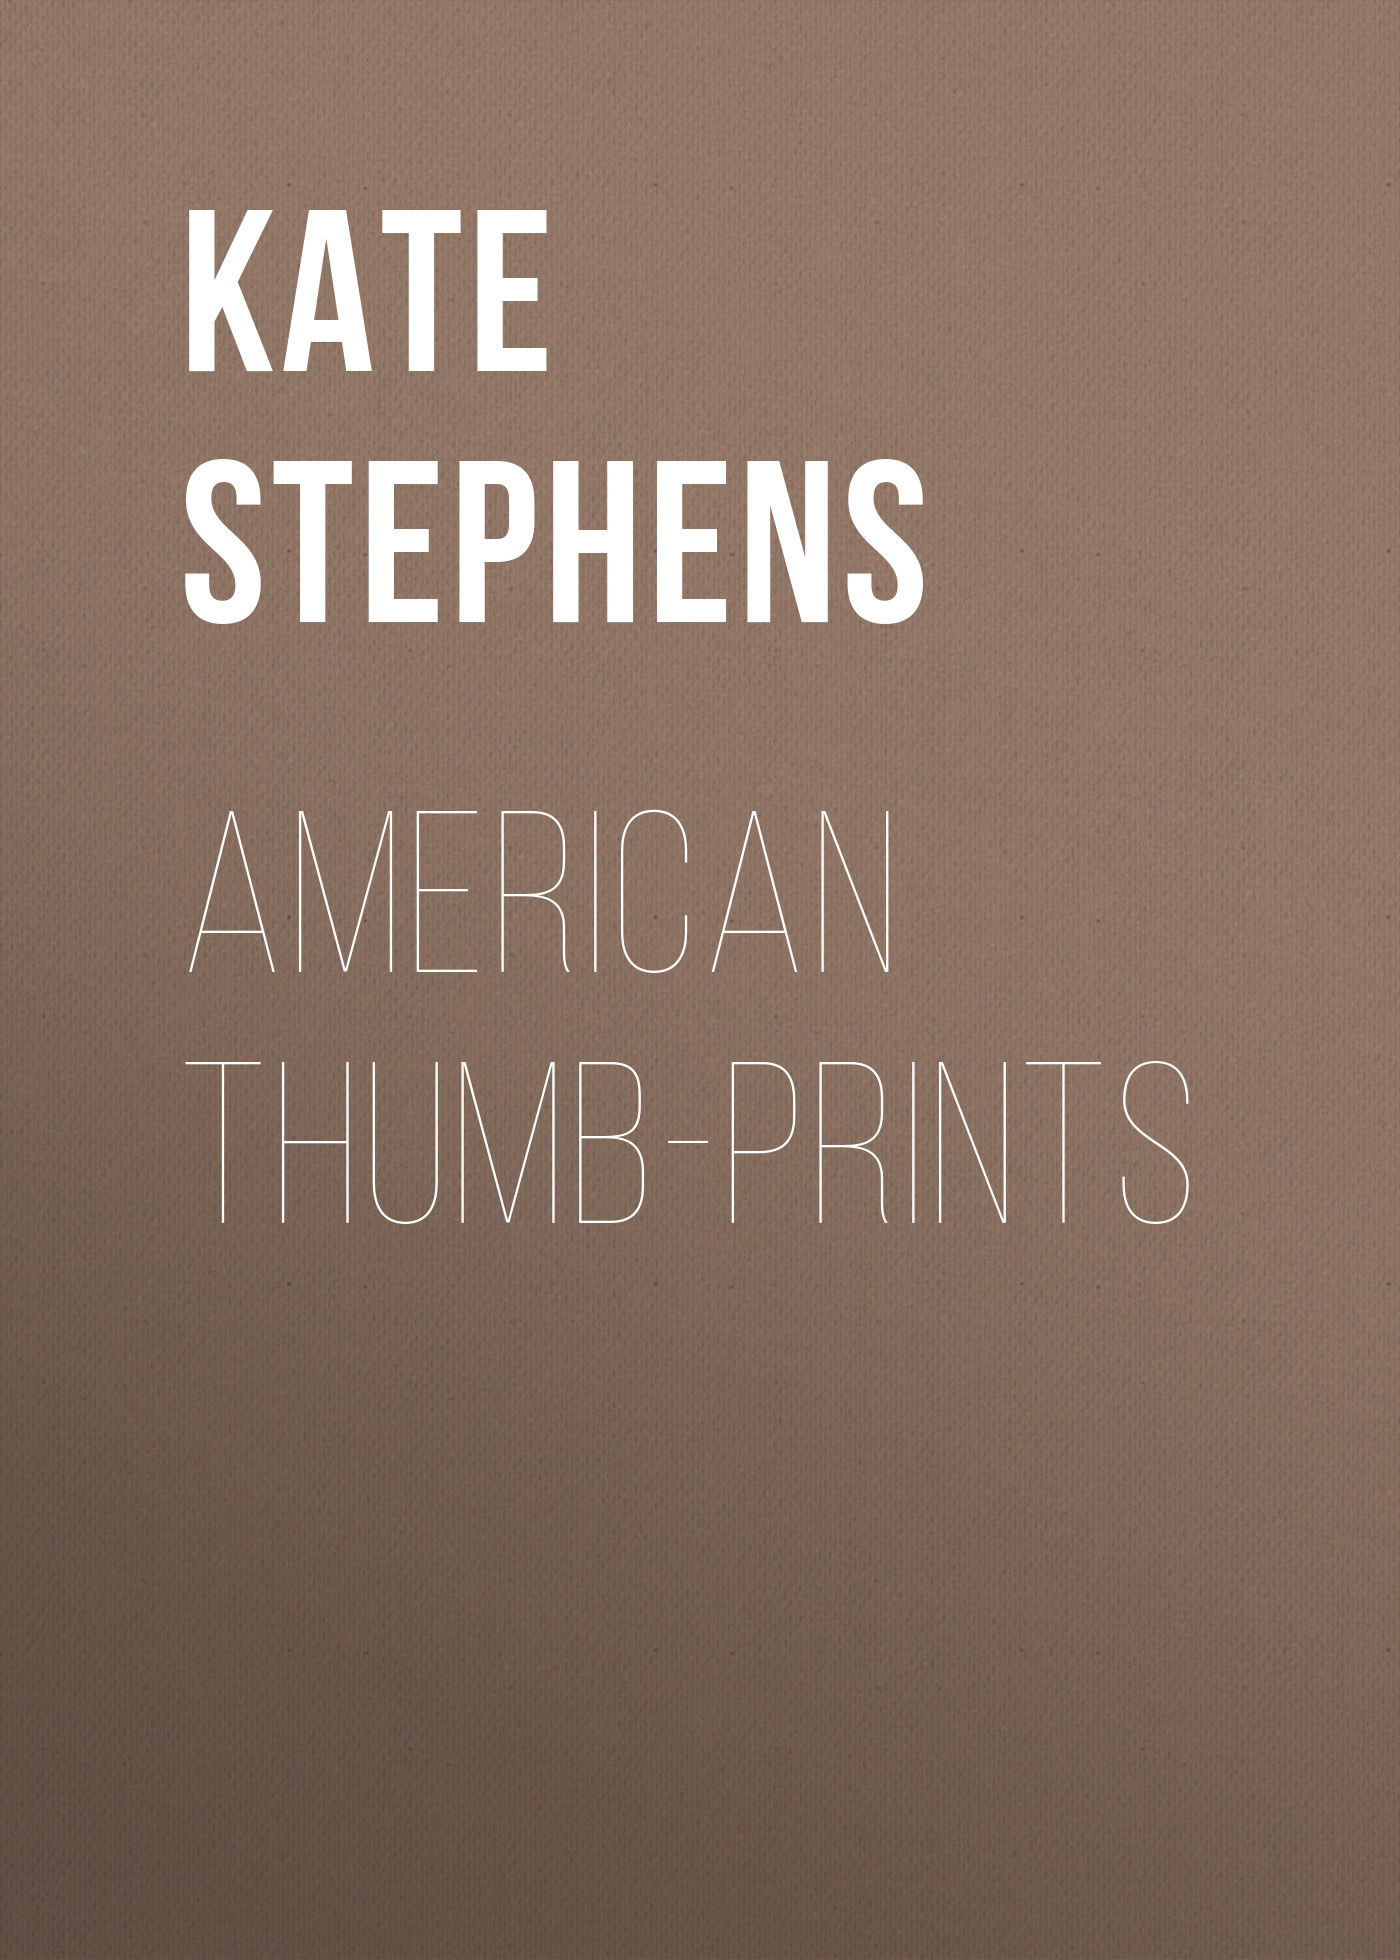 Книга American Thumb-prints из серии , созданная Kate Stephens, может относится к жанру Зарубежная классика, Зарубежная старинная литература. Стоимость электронной книги American Thumb-prints с идентификатором 34841158 составляет 0 руб.